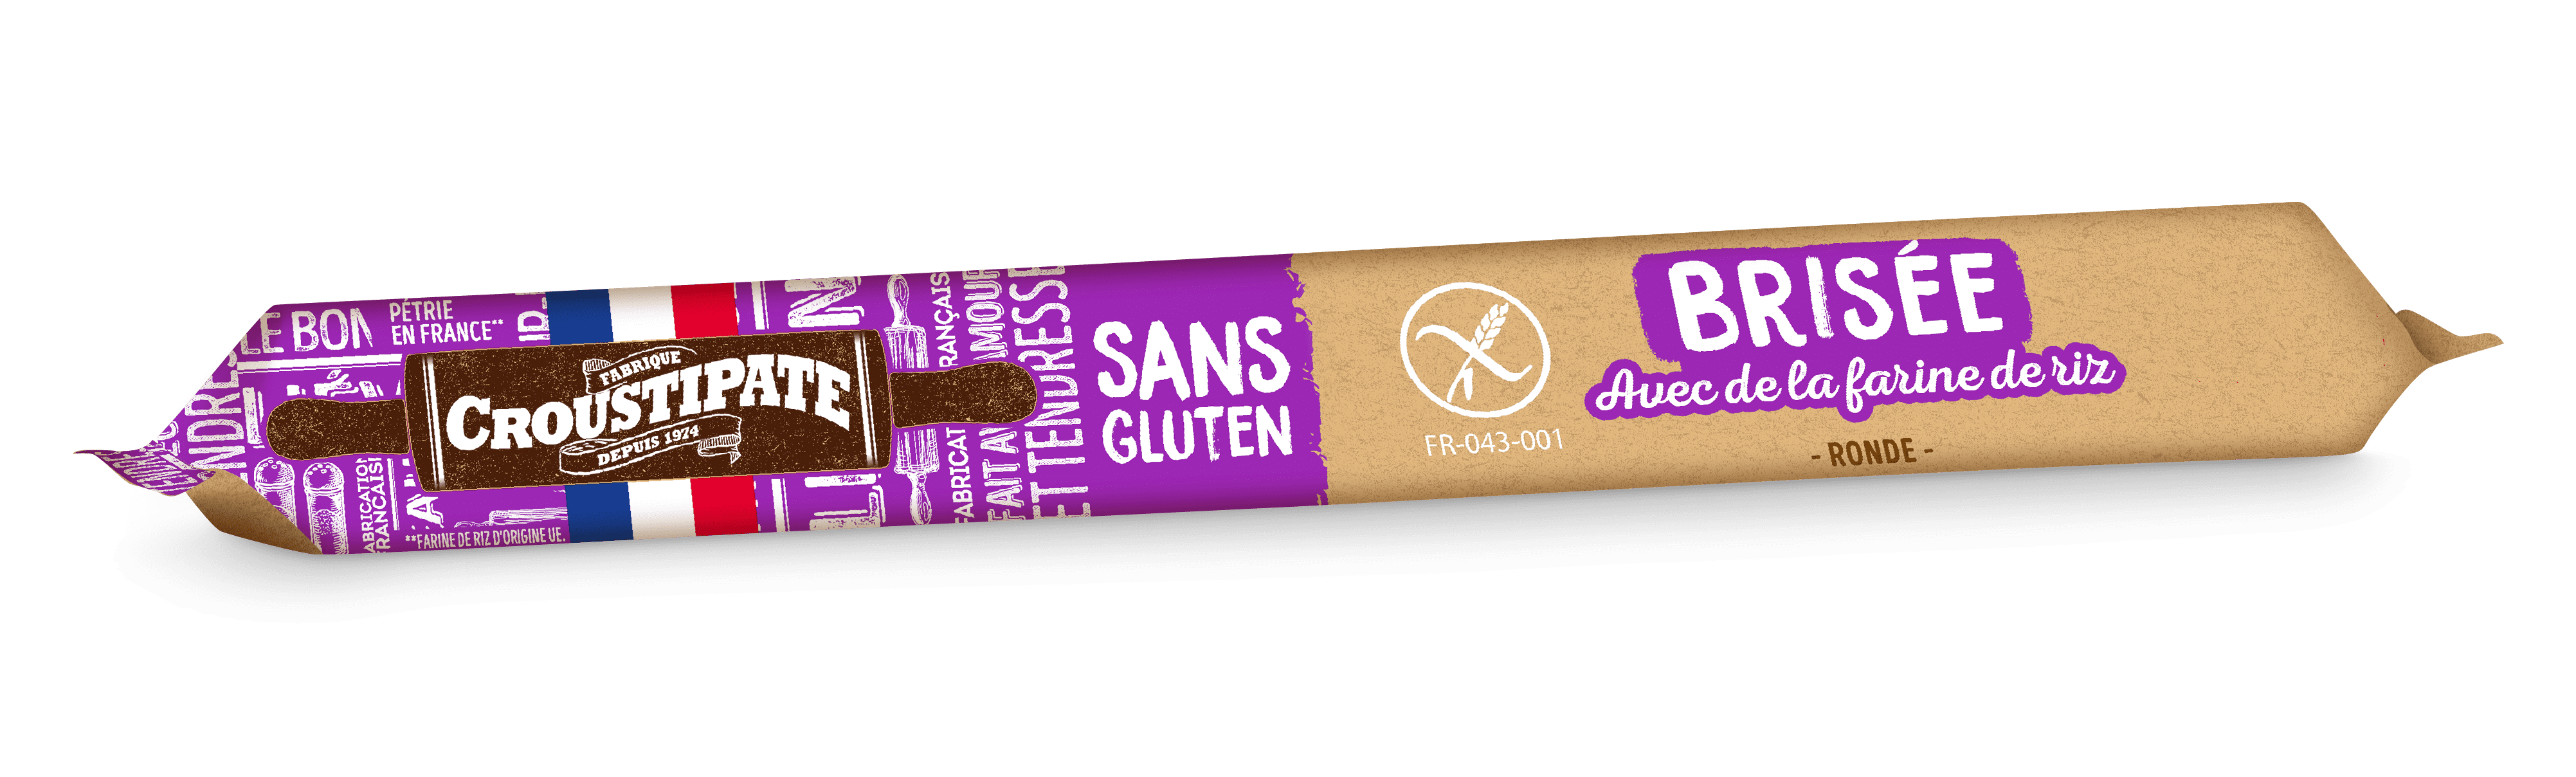 Pâtes sans gluten - Croustipate